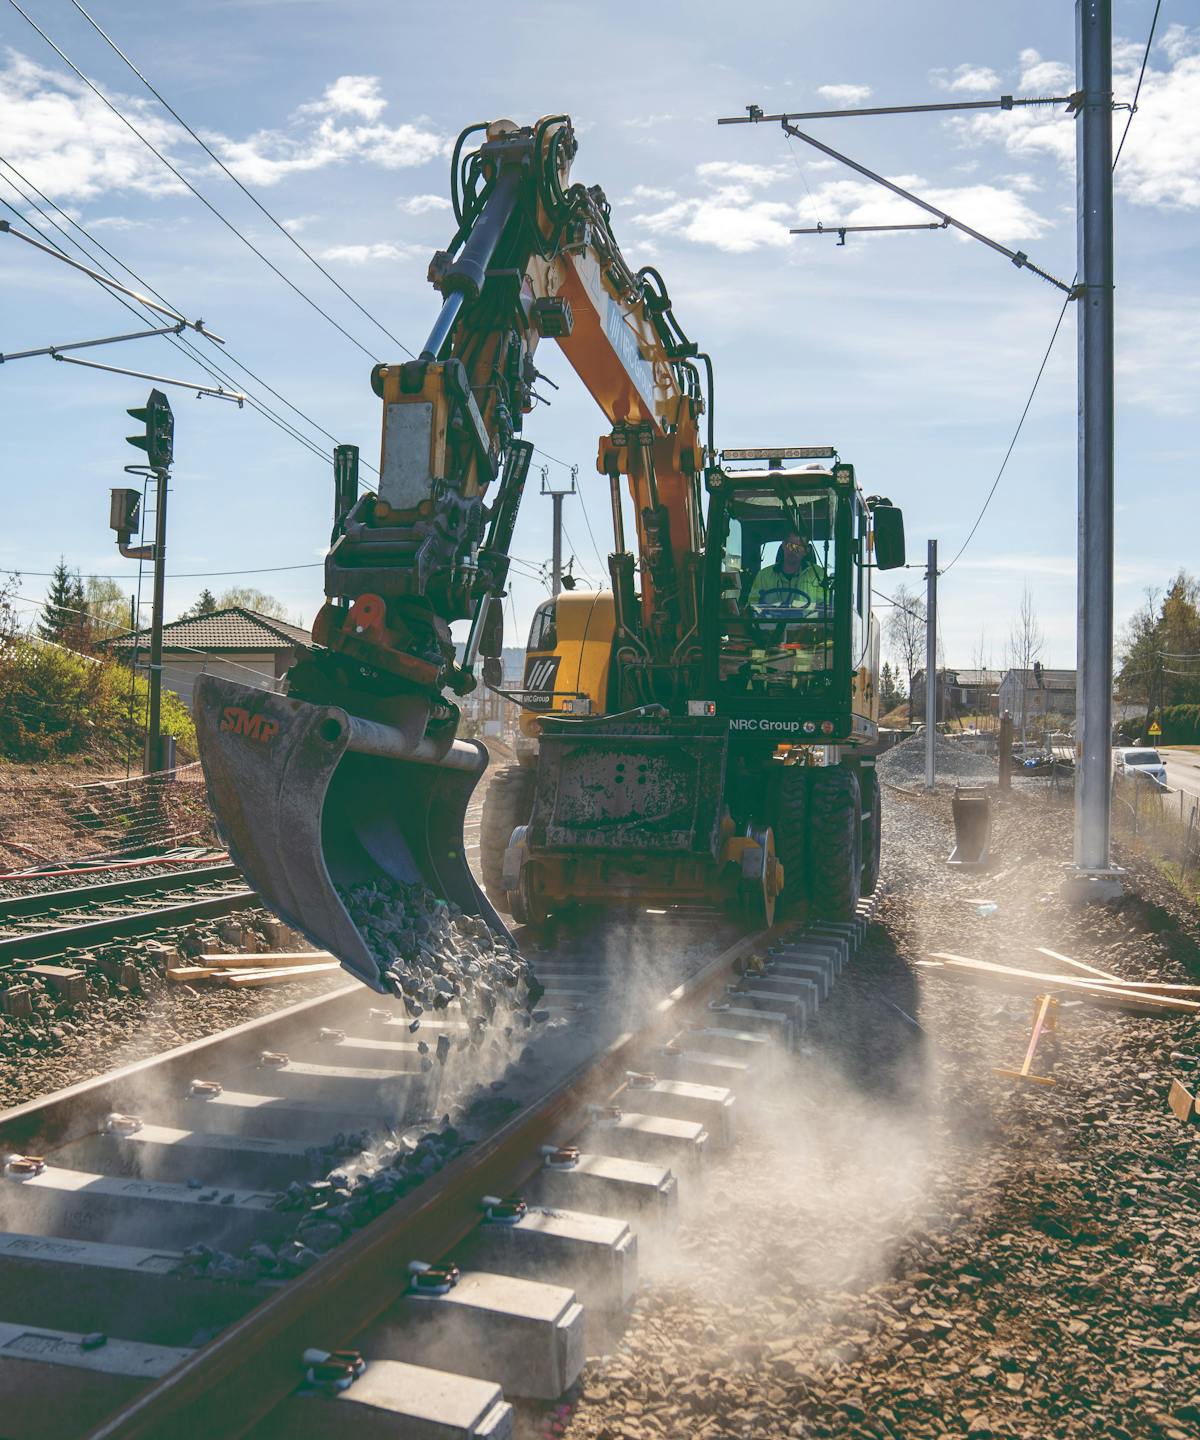 Excavator on train tracks